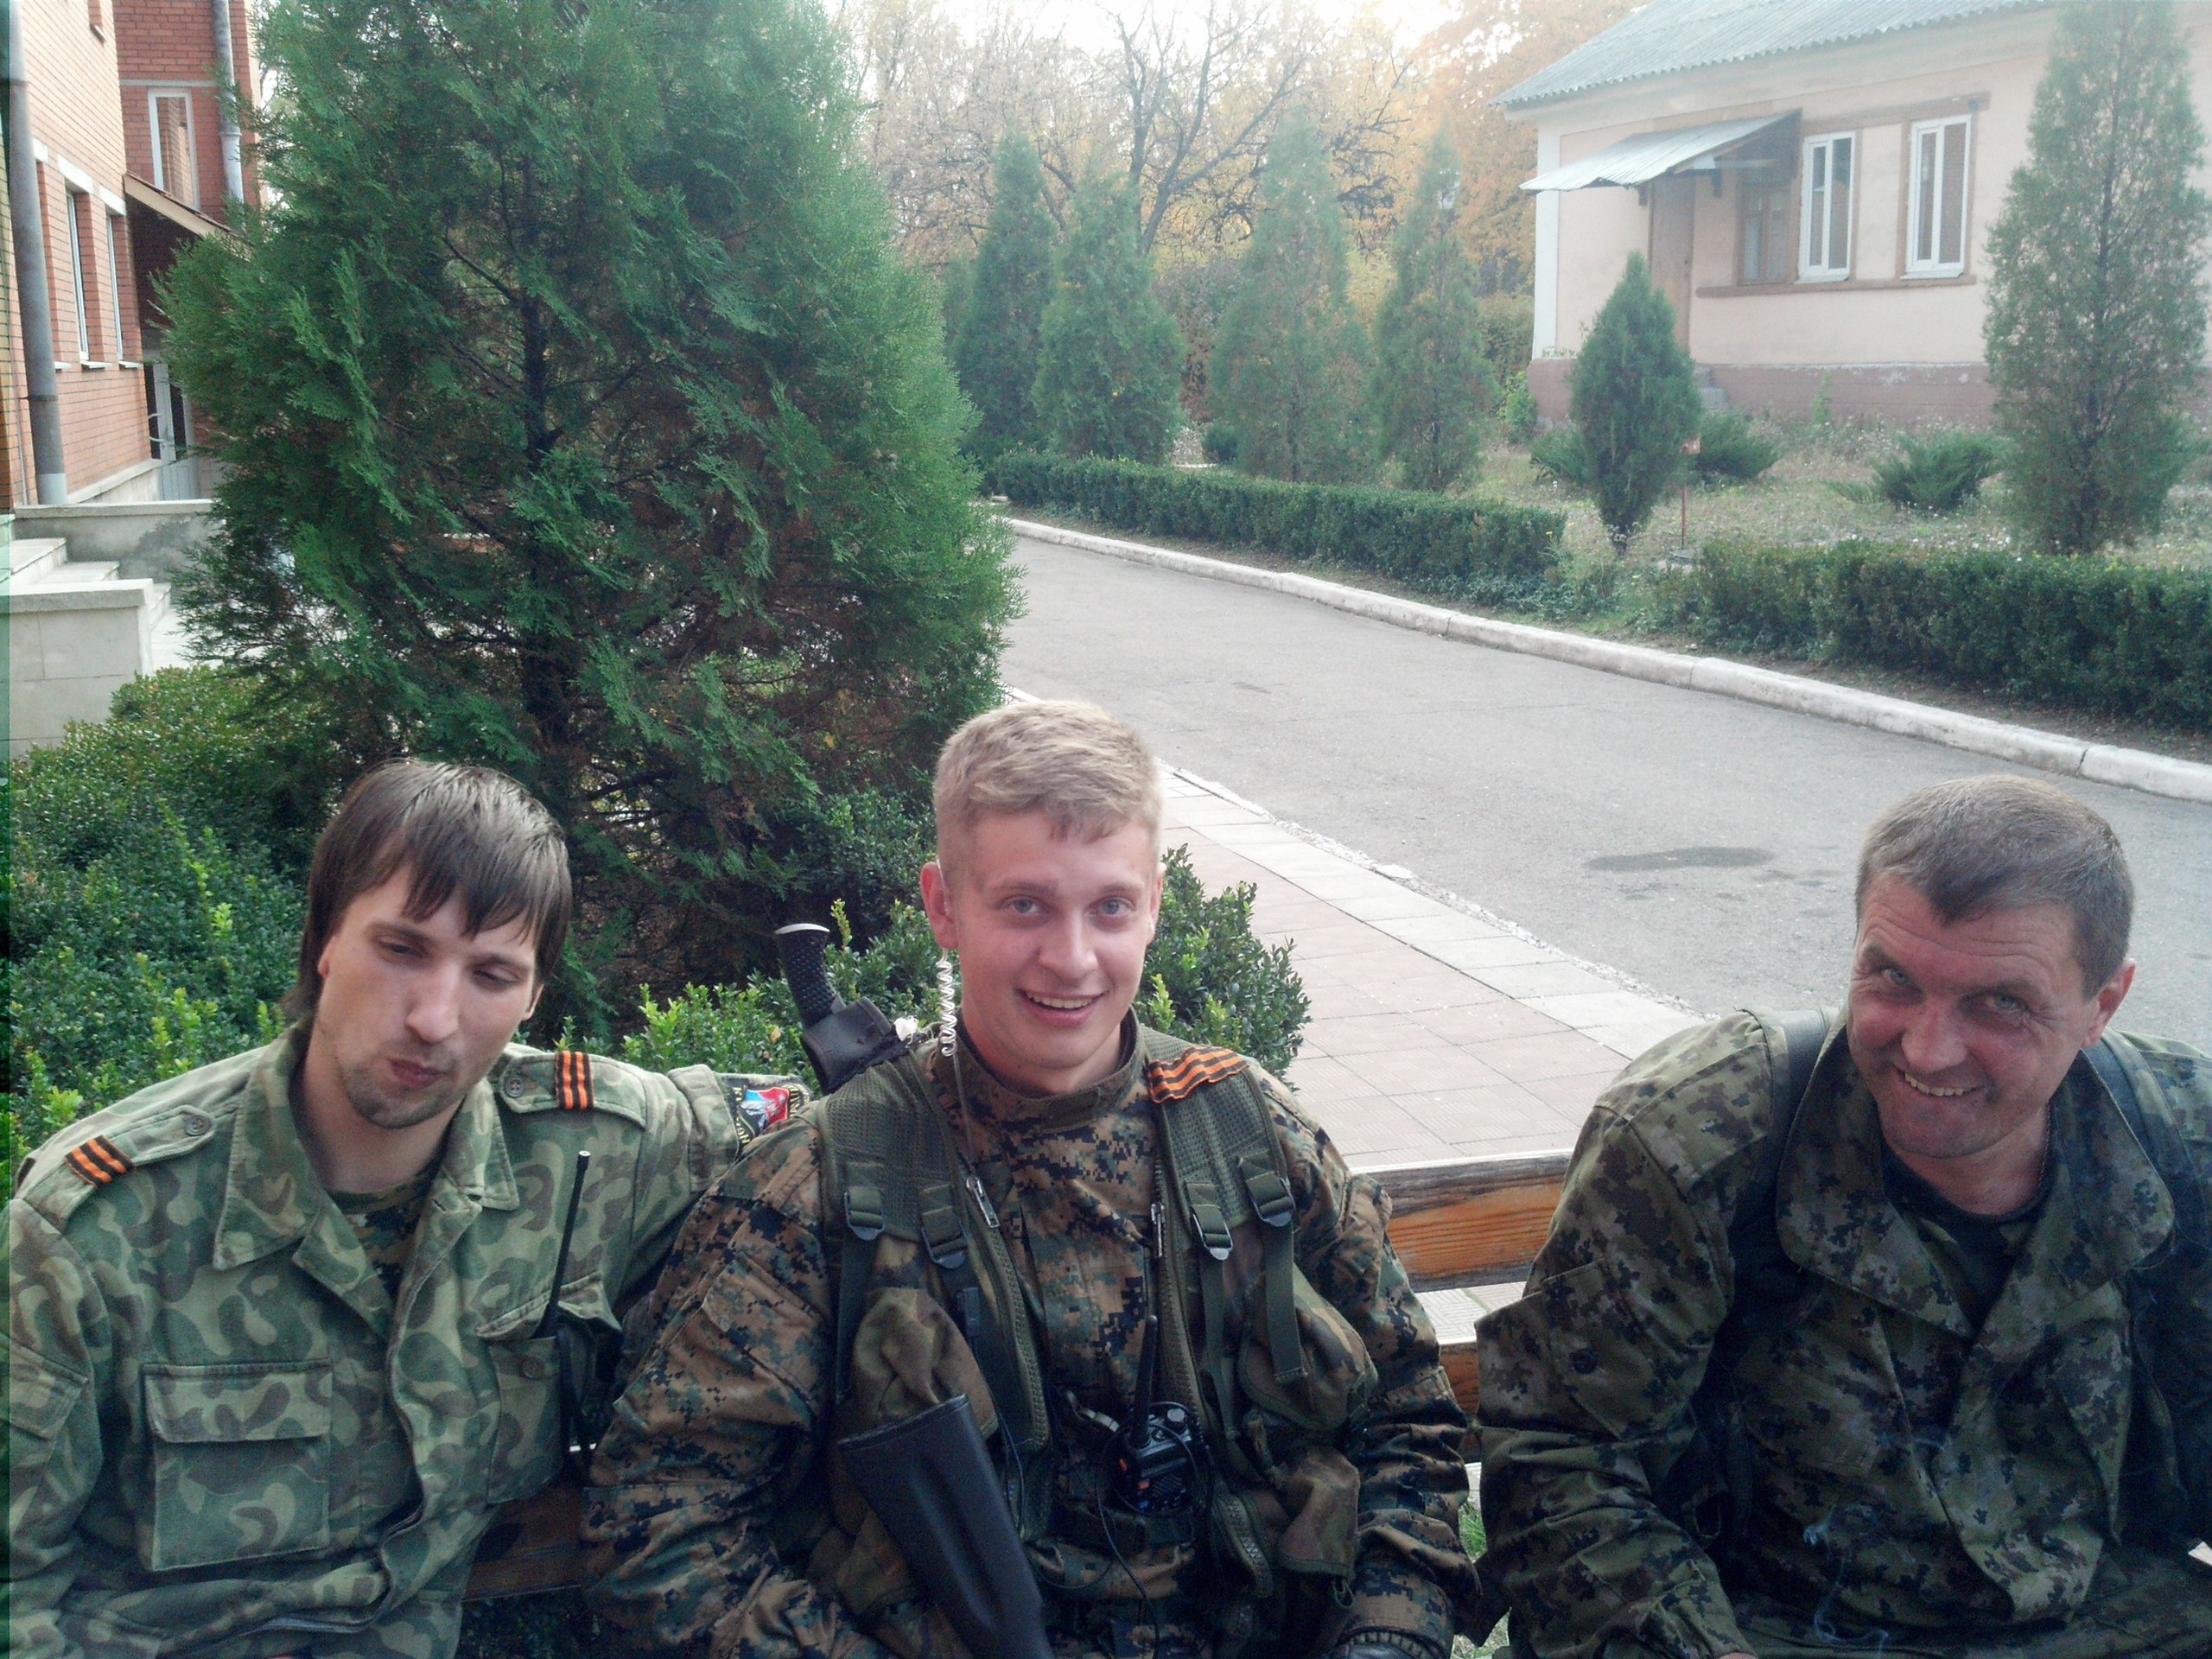 Джумаев (в центре) воевал в рядах боевиков "ДНР". Фото: Roman Dzhumaev / "ВКонтакте"